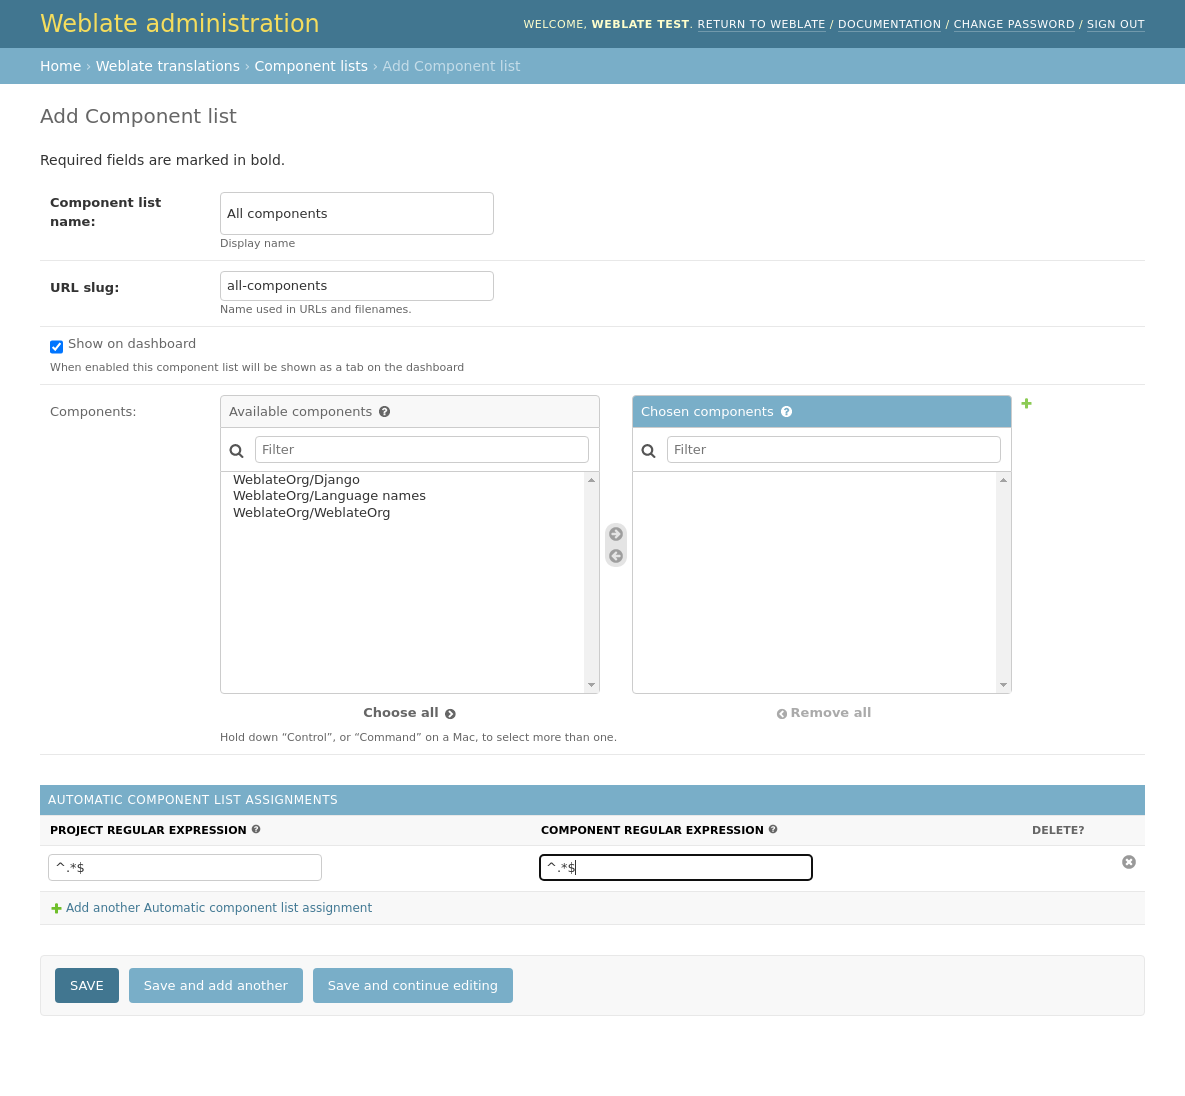 Изображение, показывающее панель администрирования Weblate с заполненной вышеуказанной конфигурацией.